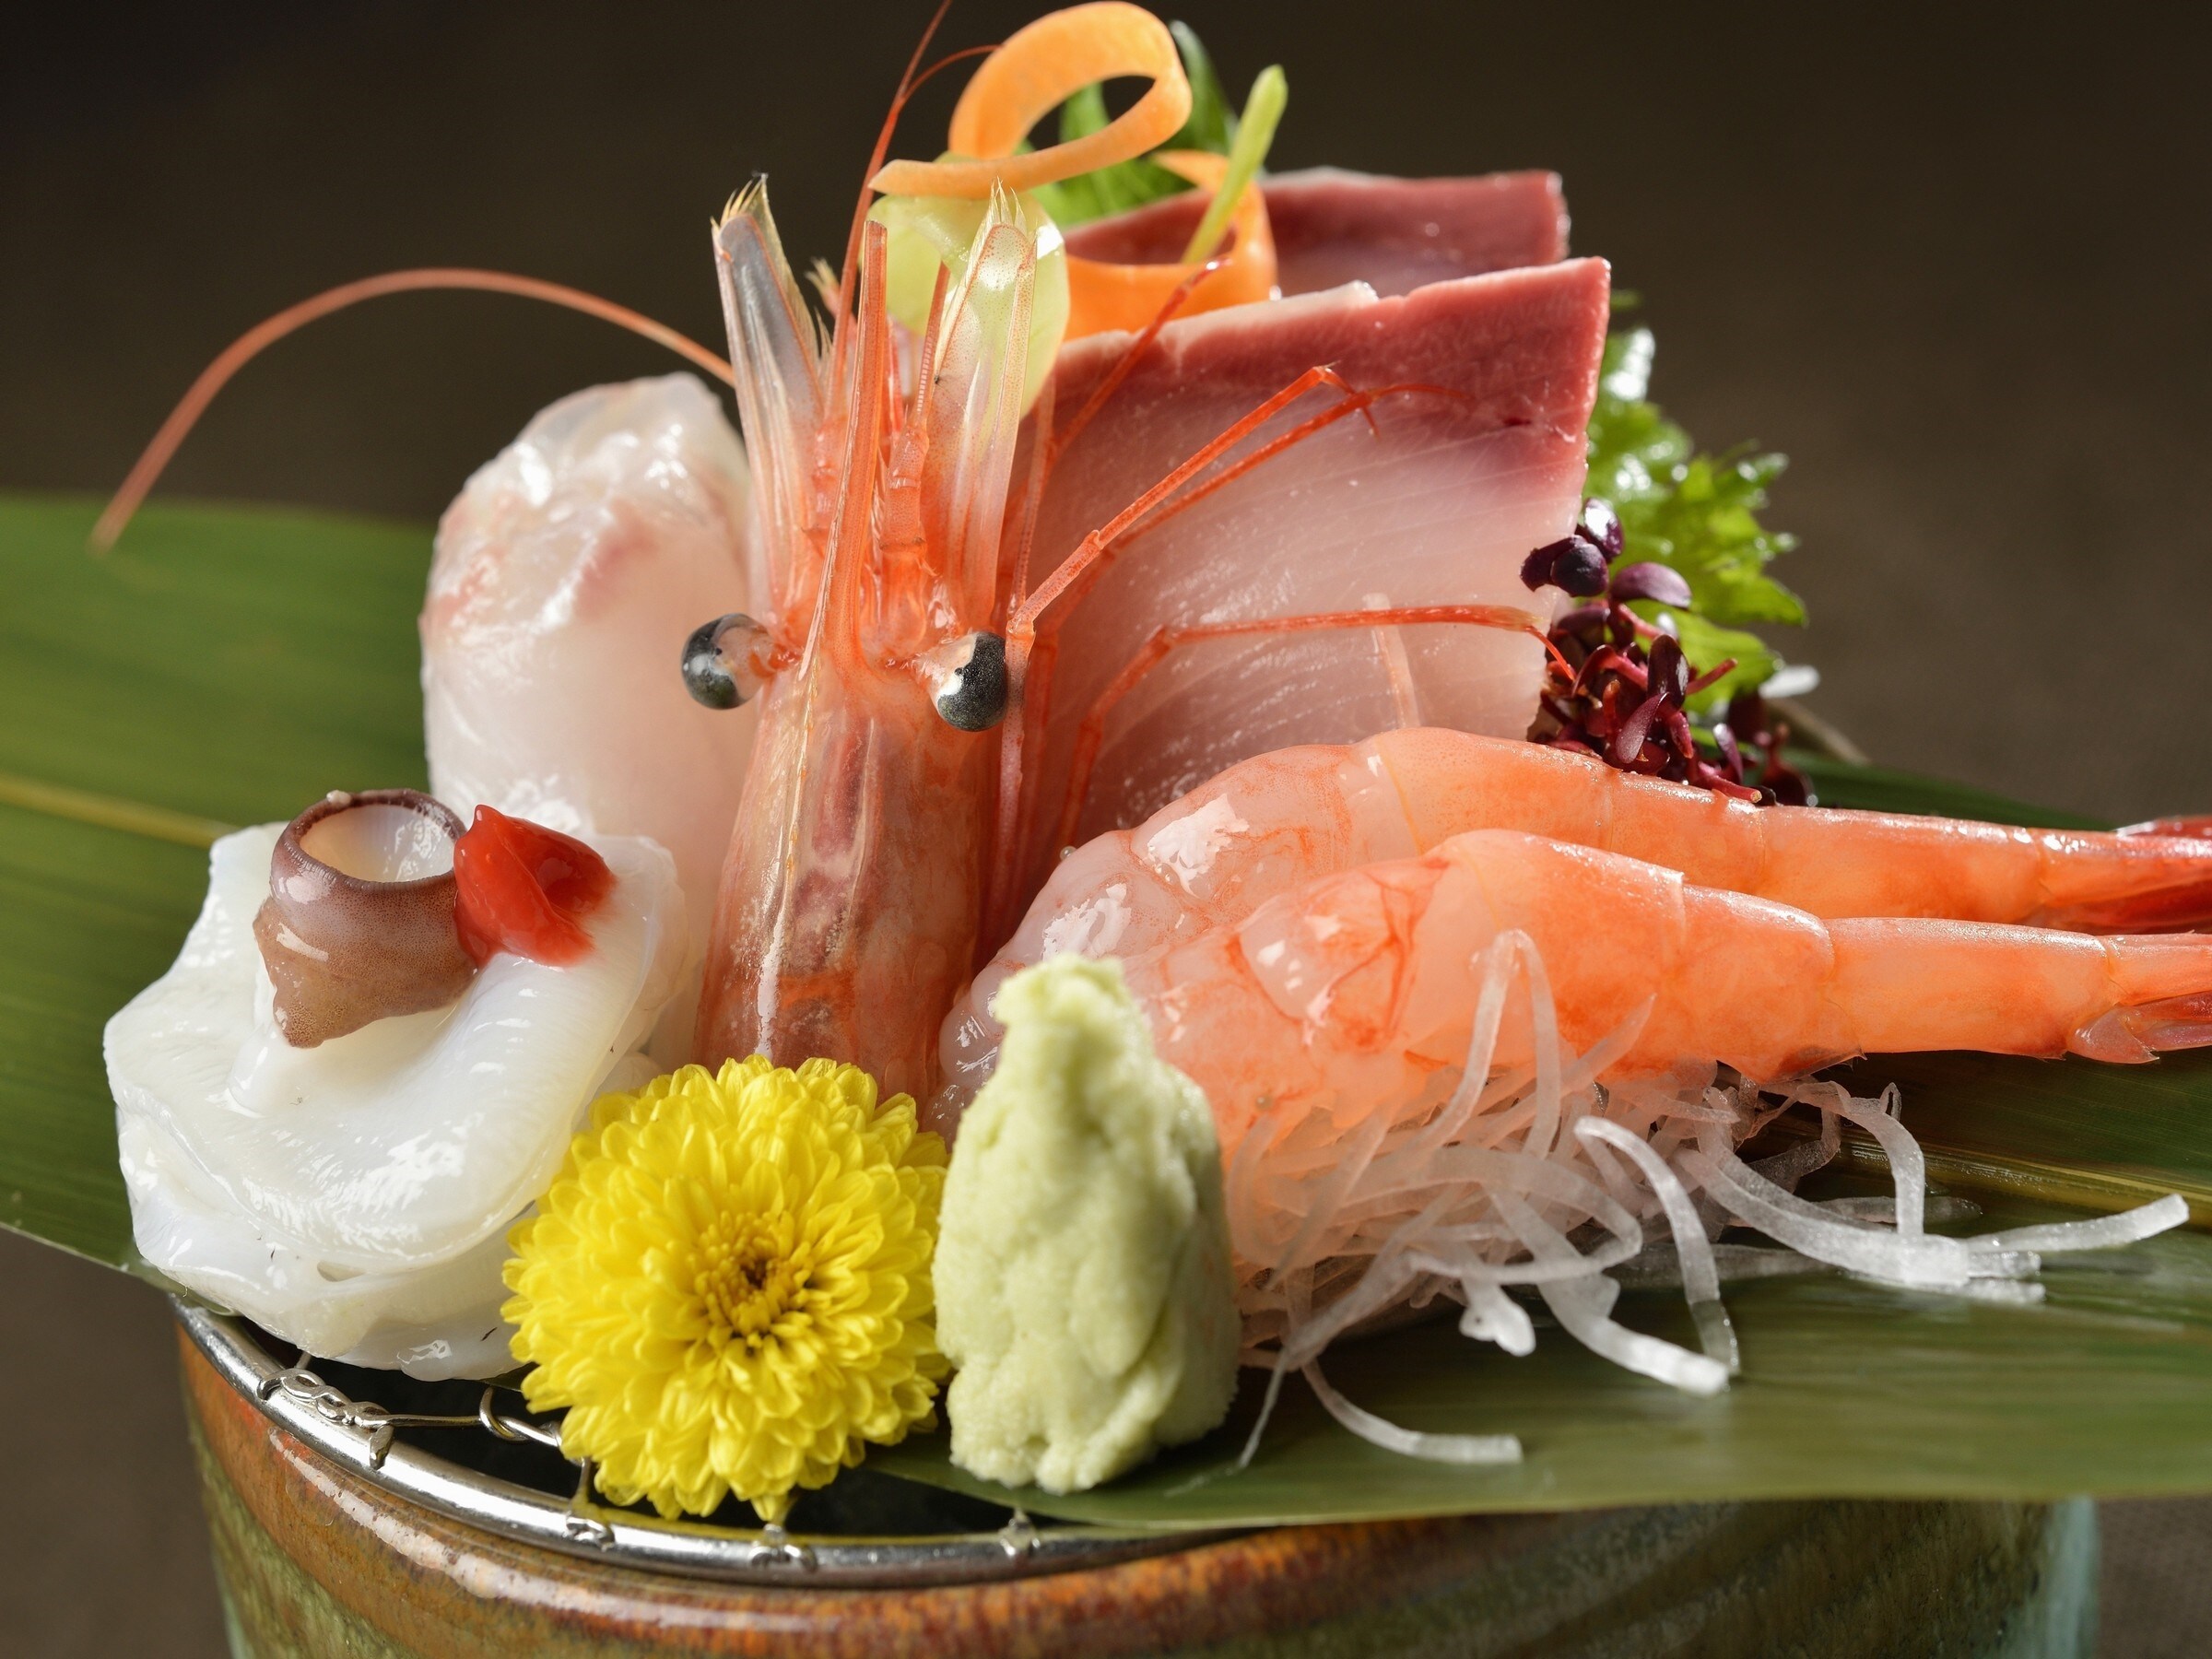 Sashimi seafood dari Laut Jepang yang bisa dinikmati dengan mata dan lidah